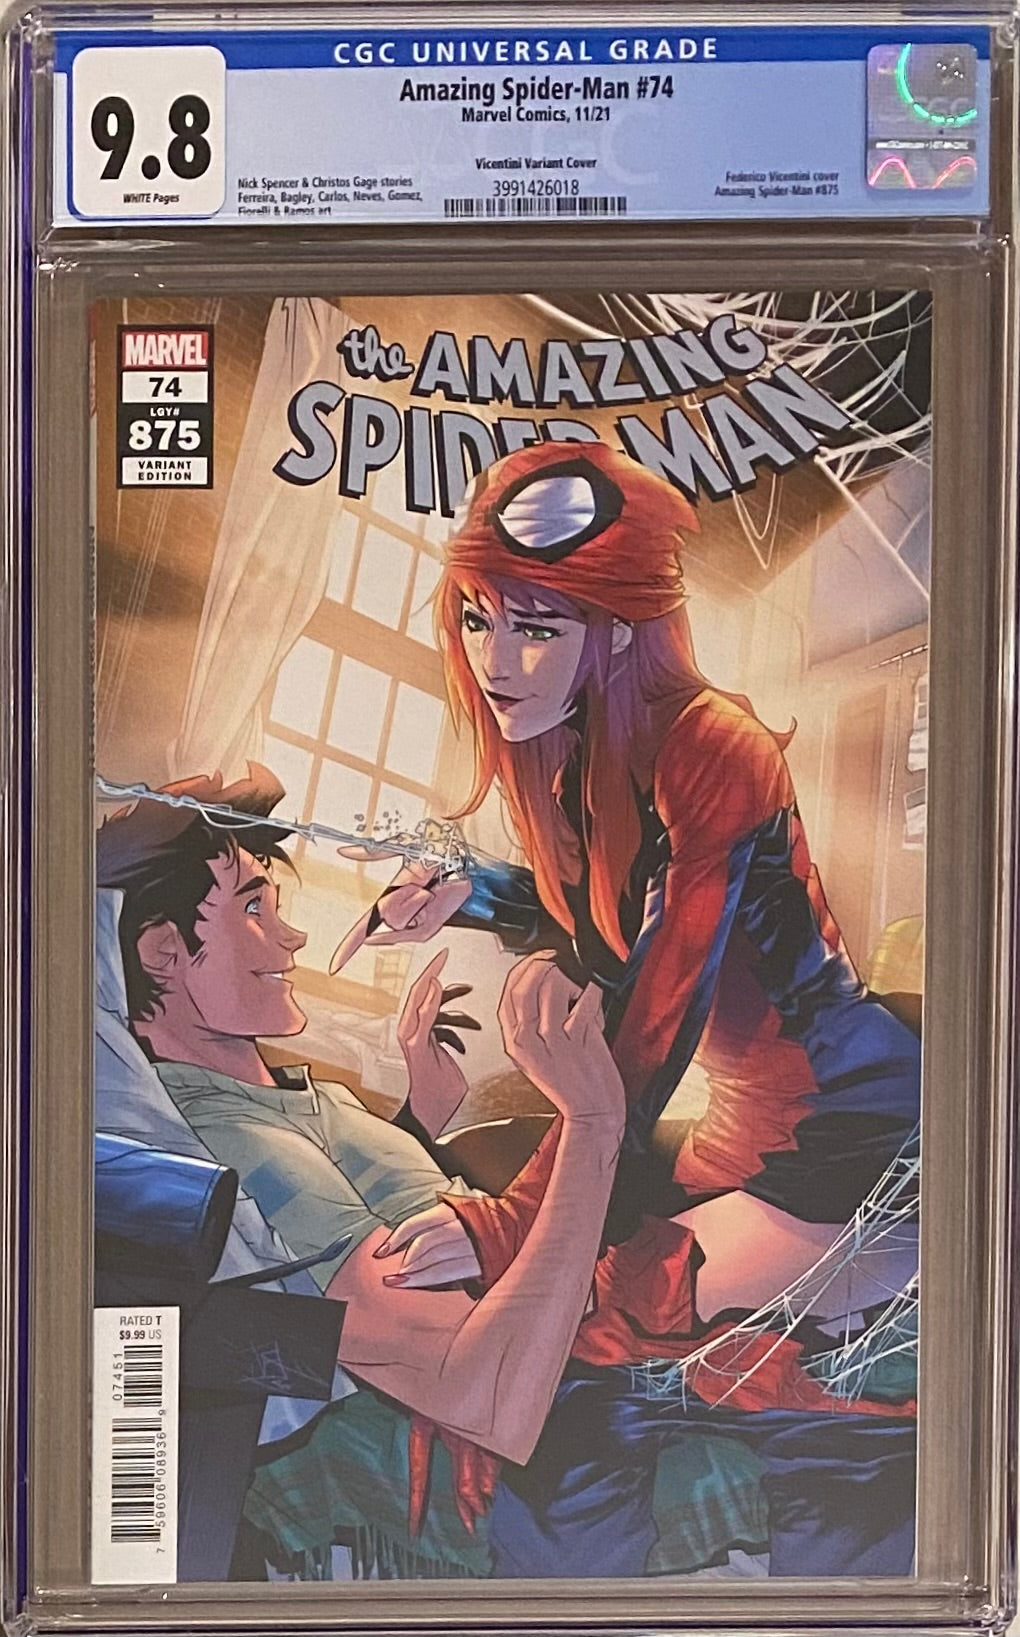 Amazing Spider-Man #74 (#875) Vicentini Variant CGC 9.8